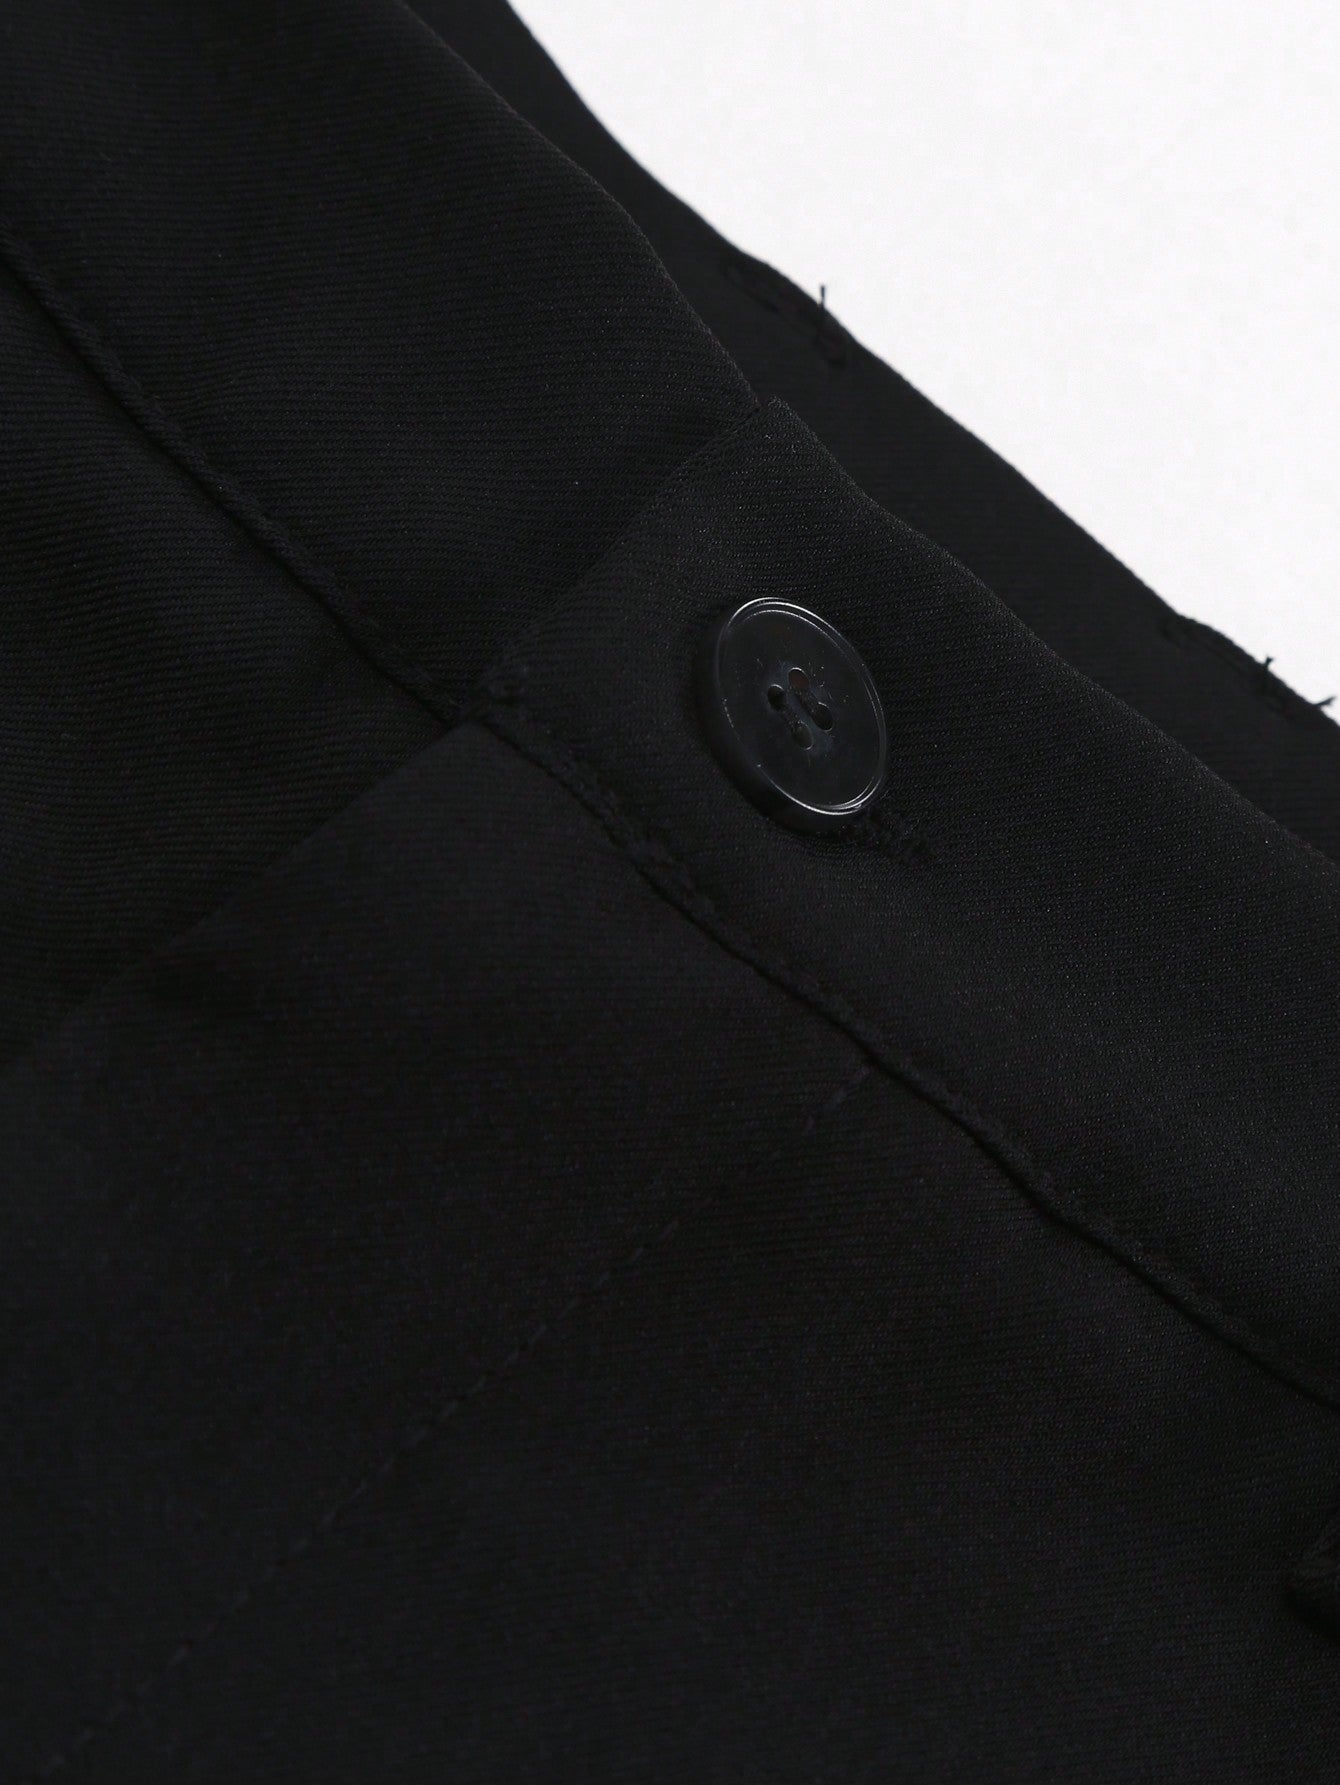 Men's Color-block Lapel Collar Suit Jacket And Pants Set